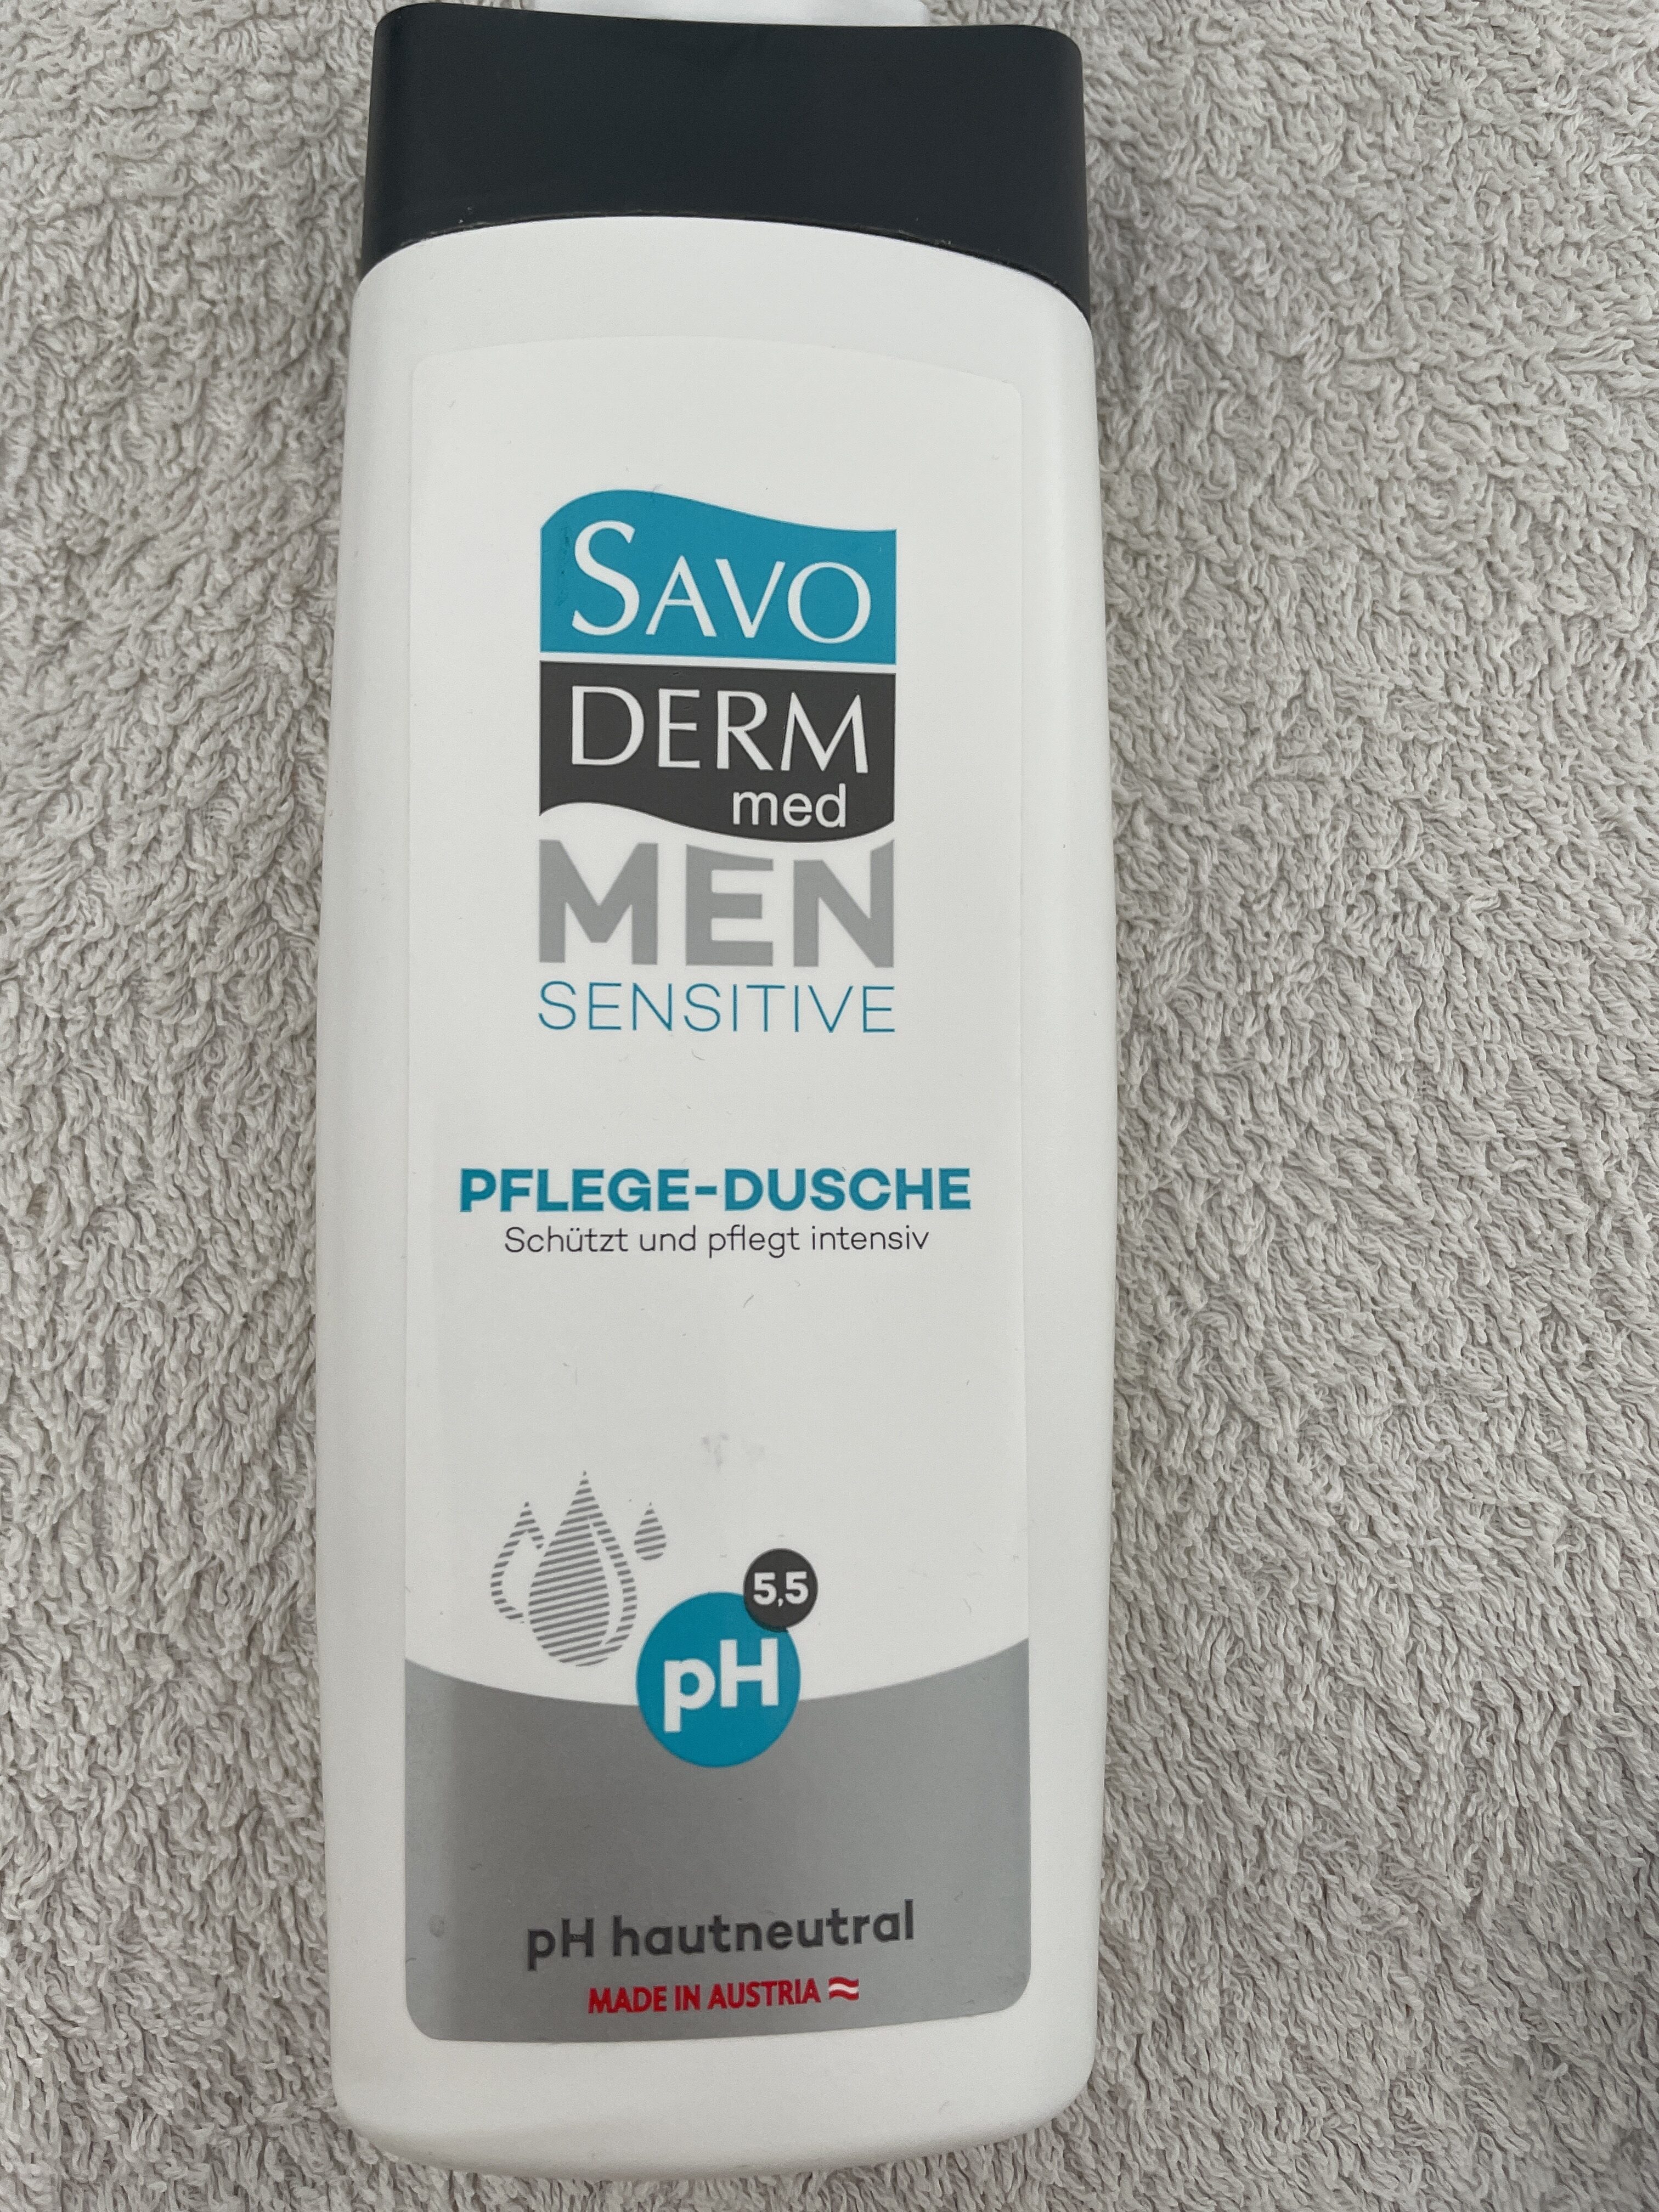 Men Sensitive Pflege-Dusche - Produto - de